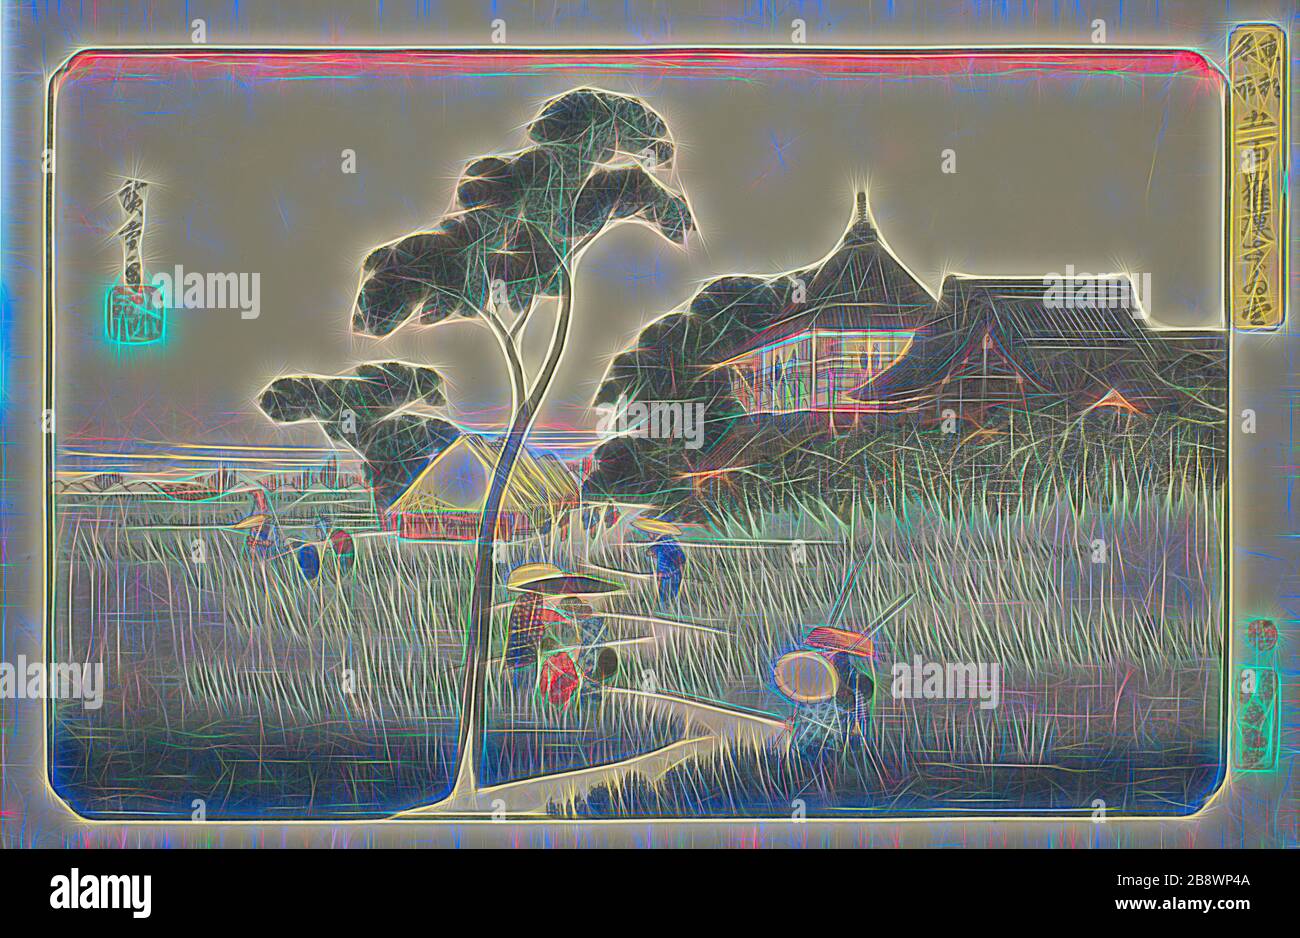 Salle Sazai au Temple des cinq cents Arhats (Gohyaku rakan Sazaïdo), de la série lieux célèbres dans la capitale orientale (Toto meisho), c. 1832/38, Utagawa Hiroshige ?? ??, Japonais, 1797-1858, Japon, imprimé color woodblock, oban, 25,2 x 37,1 cm (9 15/16 x 14 5/8 in.), repensé par Gibon, design de glanissement chaleureux et gai de la luminosité et des rayons de lumière radiance. L'art classique réinventé avec une touche moderne. La photographie inspirée du futurisme, qui embrasse l'énergie dynamique de la technologie moderne, du mouvement, de la vitesse et révolutionne la culture. Banque D'Images